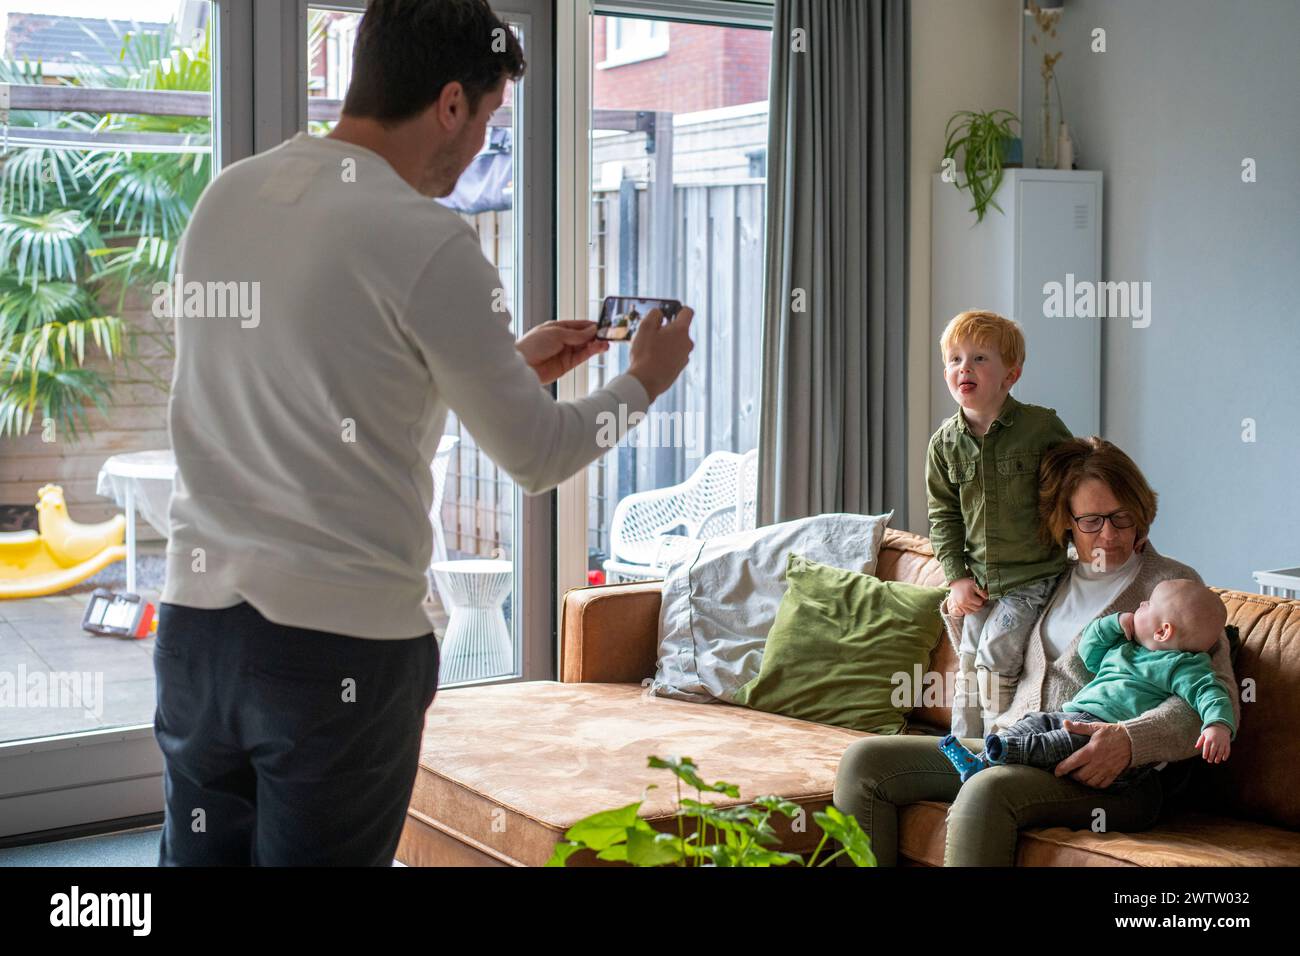 Ein Familienmoment, der drinnen festgehalten wird, während ein Mann ein Foto von einer Frau mit zwei kleinen Kindern auf einem gemütlichen Sofa macht. Stockfoto